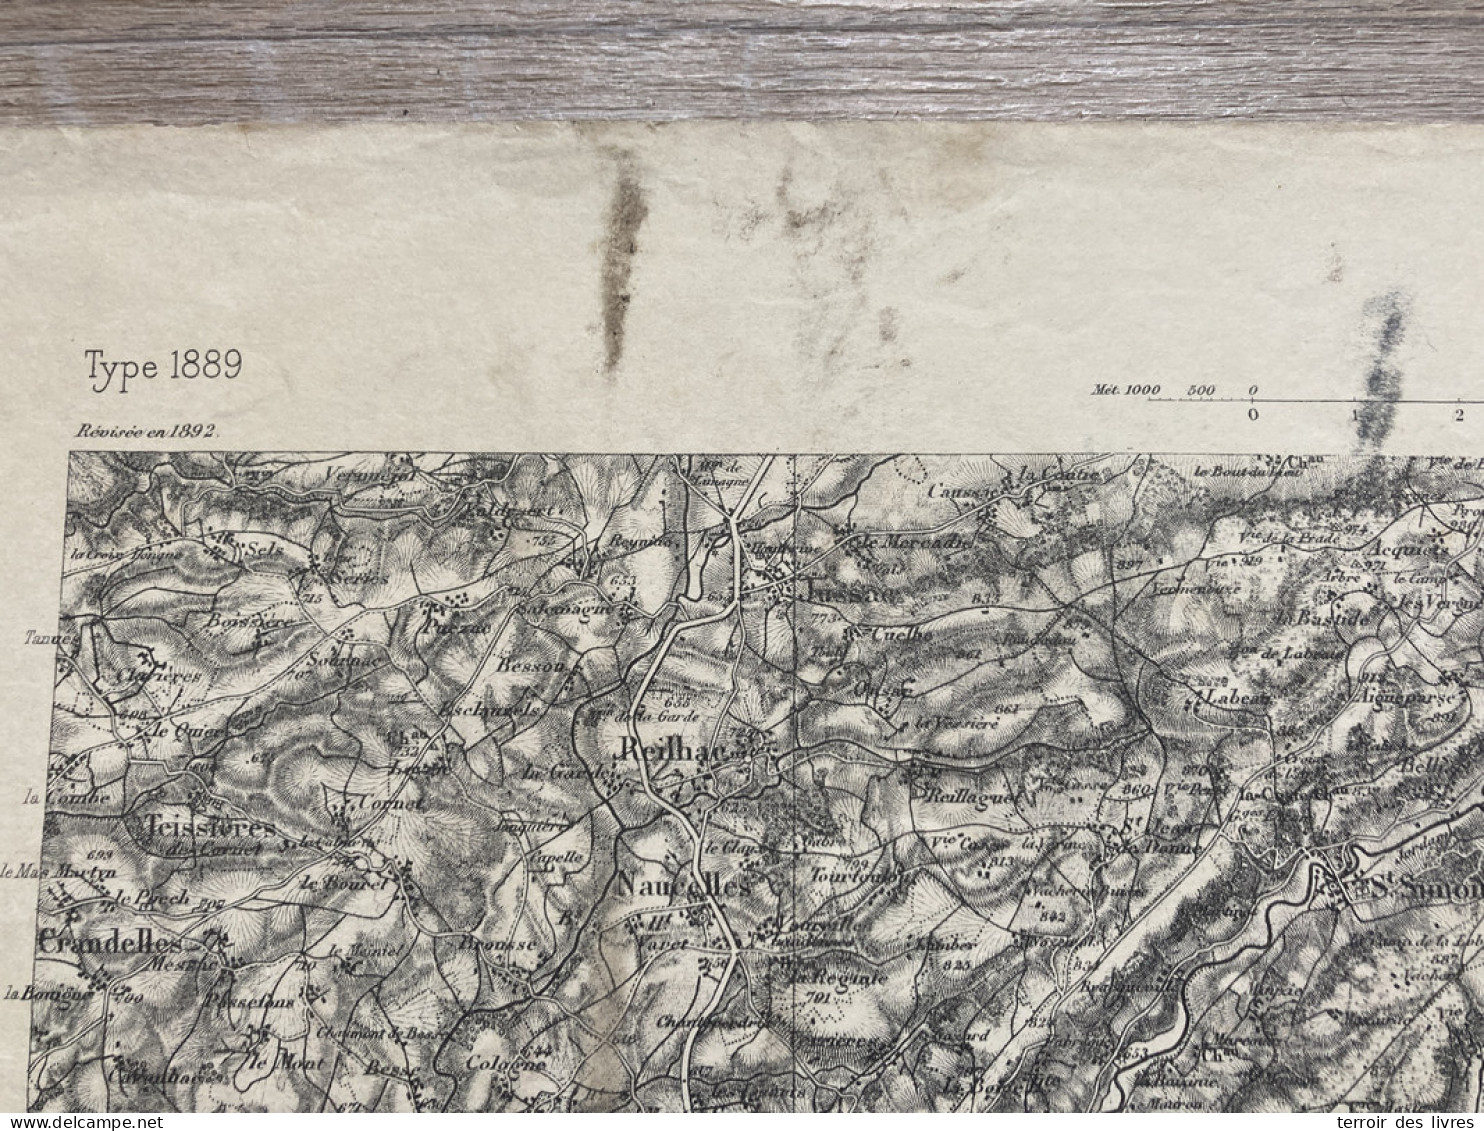 Carte état Major AURILLAC S.E. 1892 35x54cm VEZAC CARLAT YOLET GIOU-DE-MAMOU ST-ETIENNE-DE-CARLAT LABROUSSE ARPAJON-SUR- - Geographical Maps